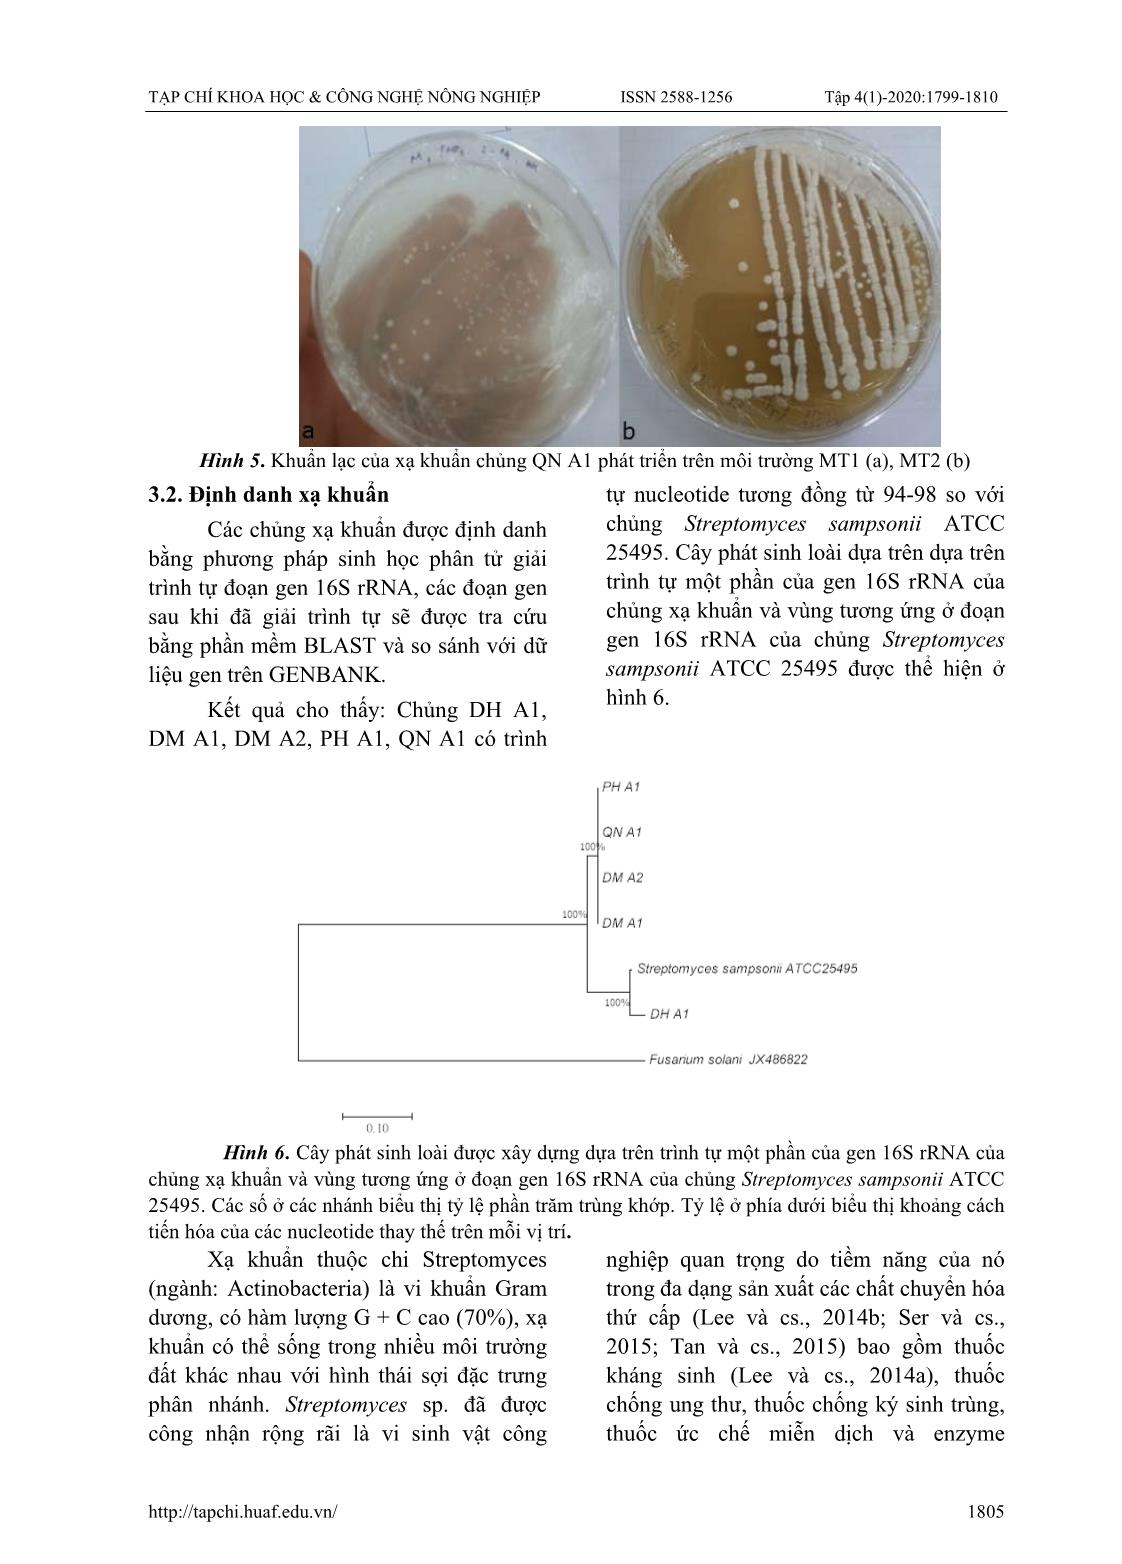 Nghiên cứu một số đặc tính sinh hoá của các chủng xạ khuẩn phân lập được từ các ao nuôi tôm thâm canh tại Thừa Thiên Huế trang 7